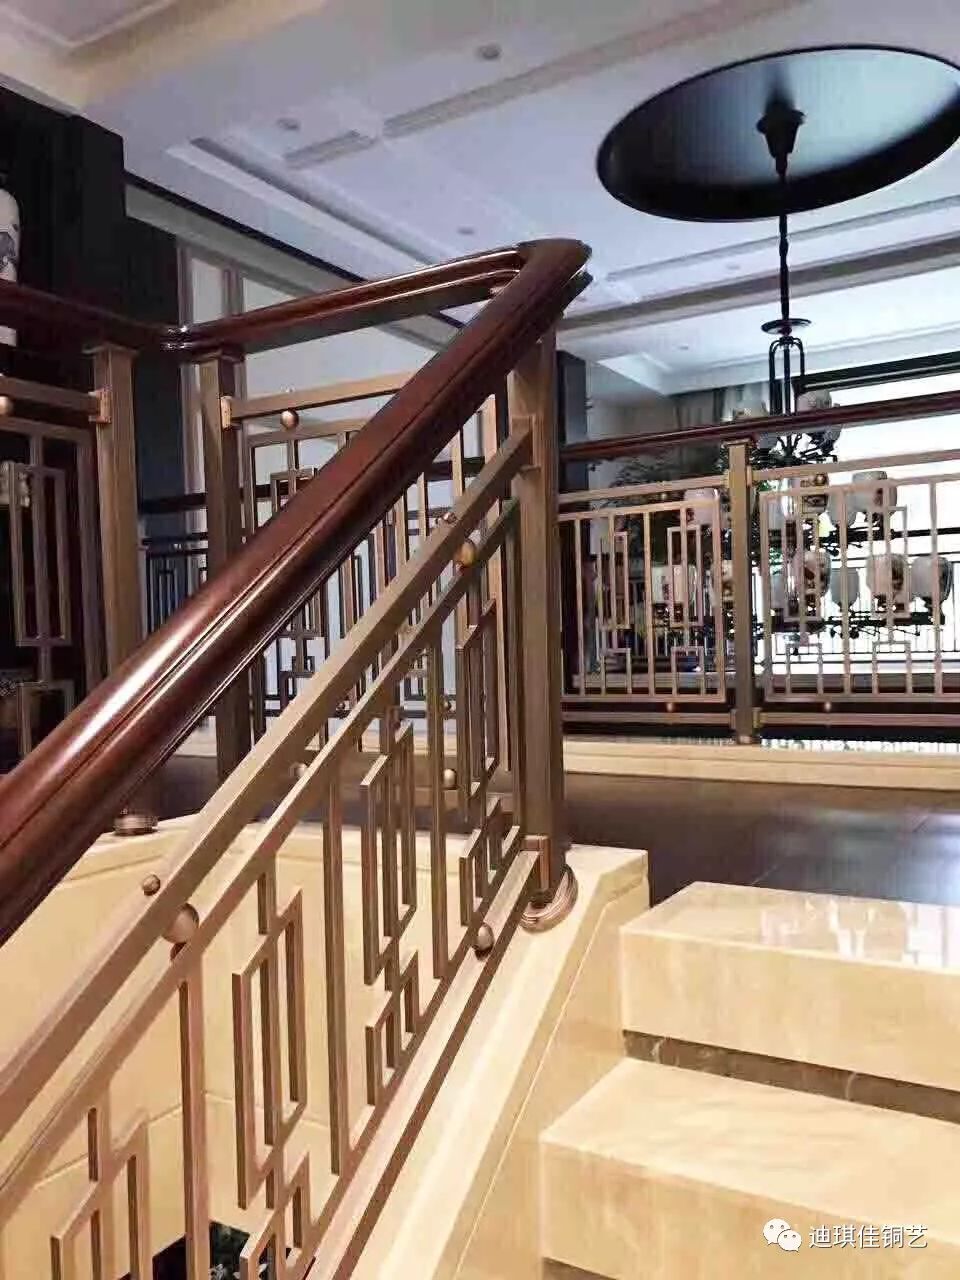 铜艺楼梯视觉之美,别墅该有的一件艺术品